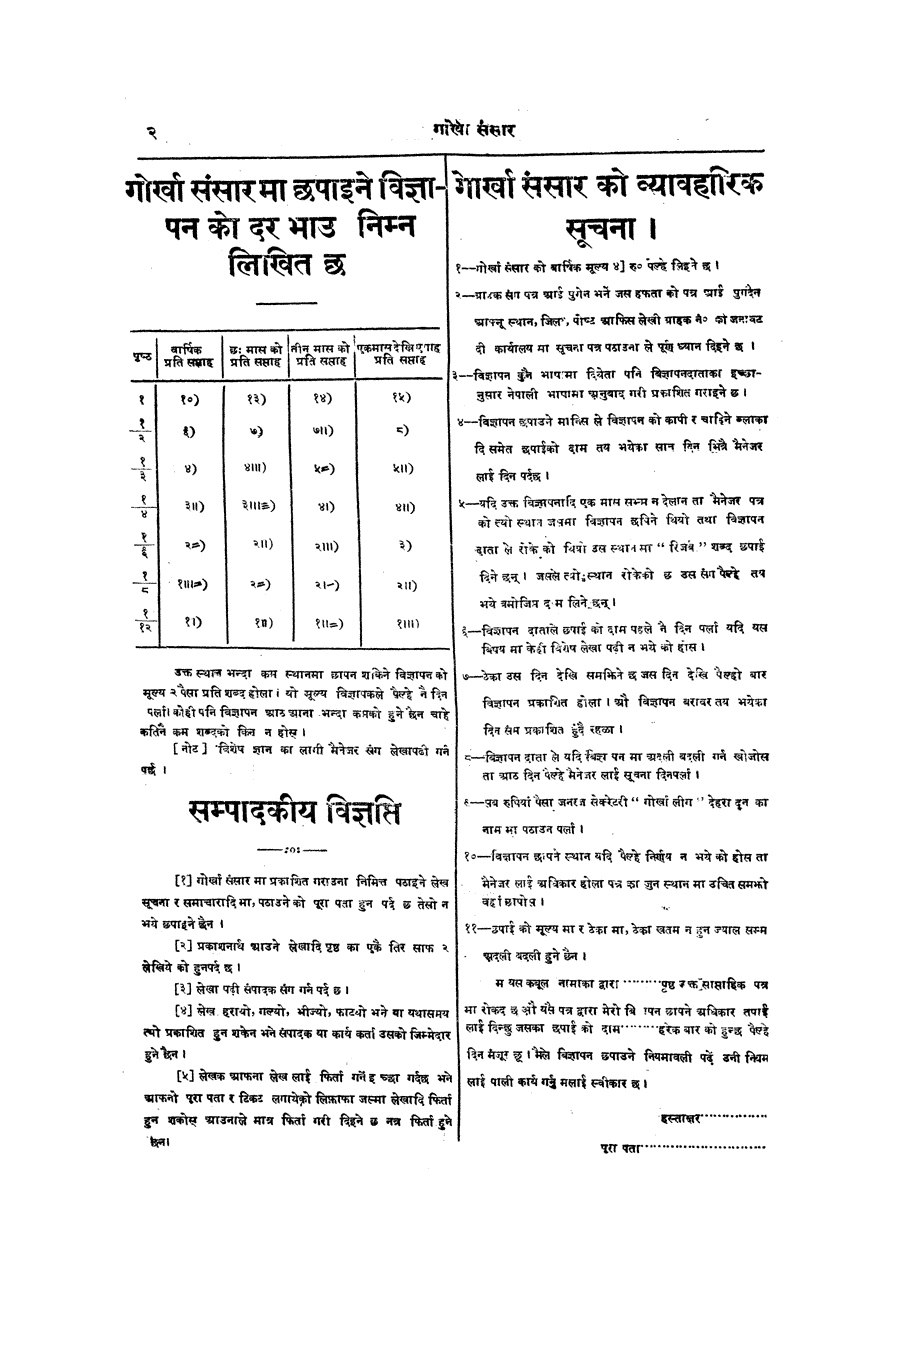 Gorkha Sansar, 23 Nov 1926, page 2